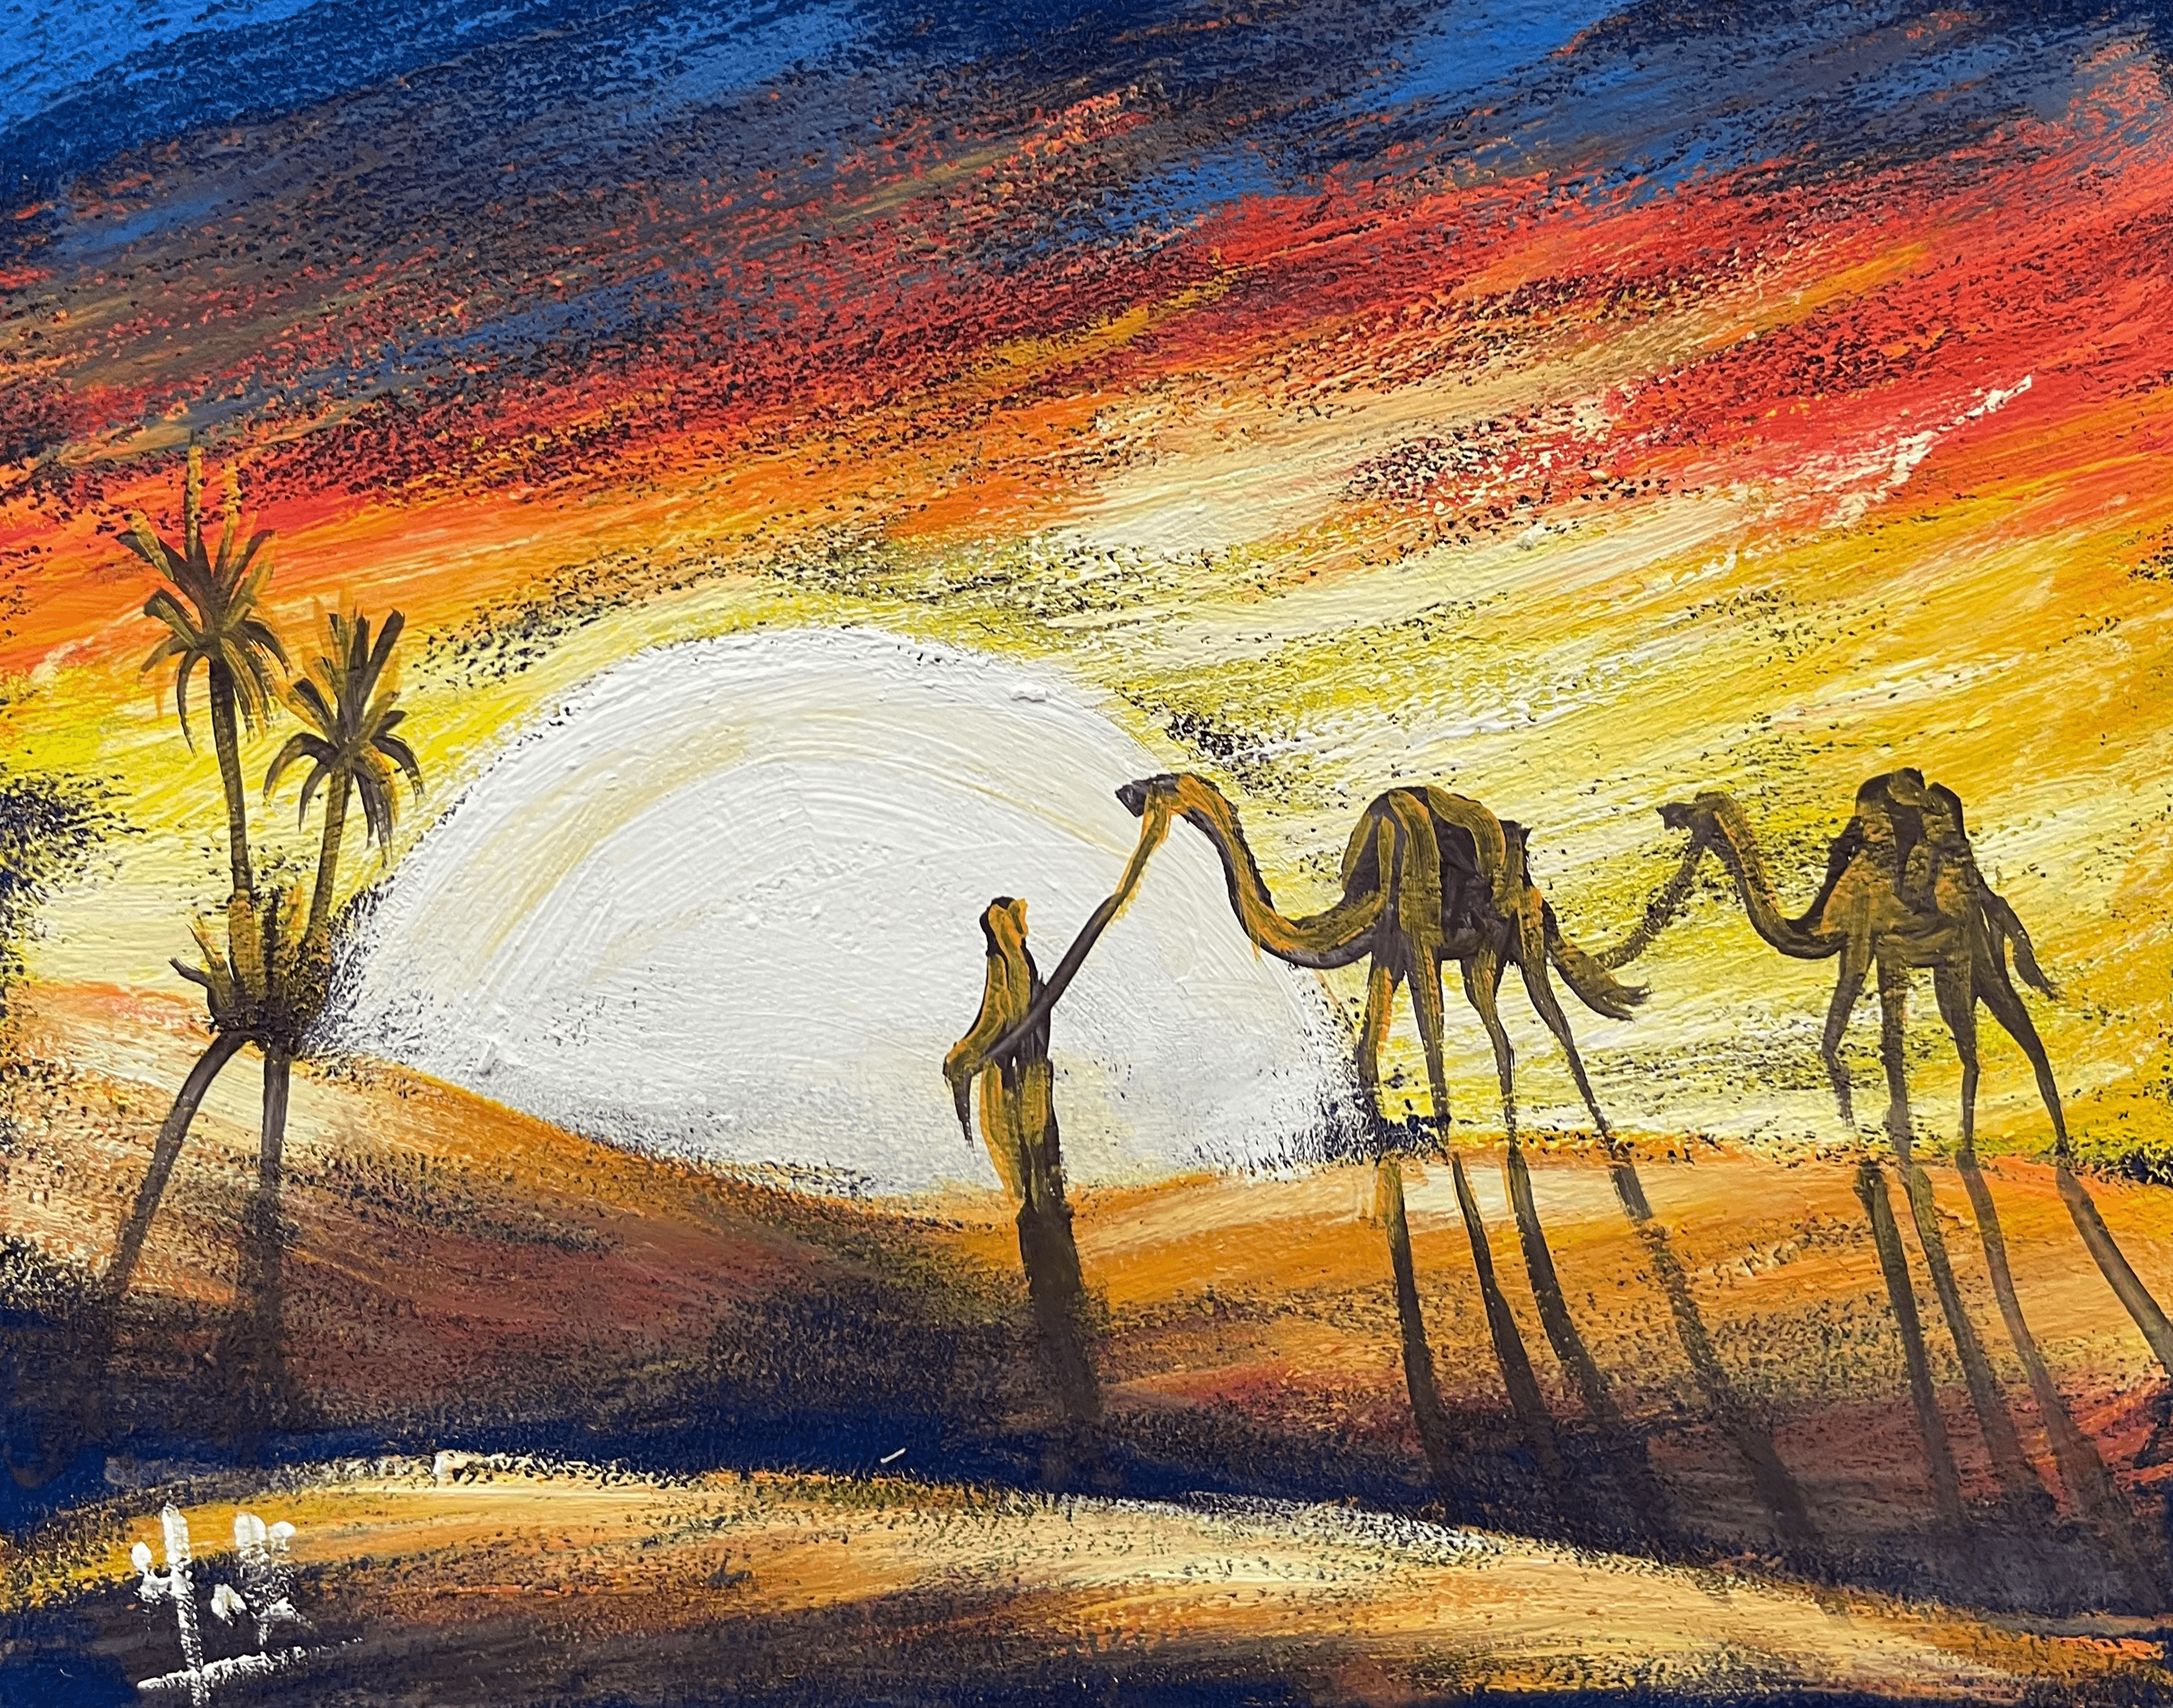 Desert caravan with camels